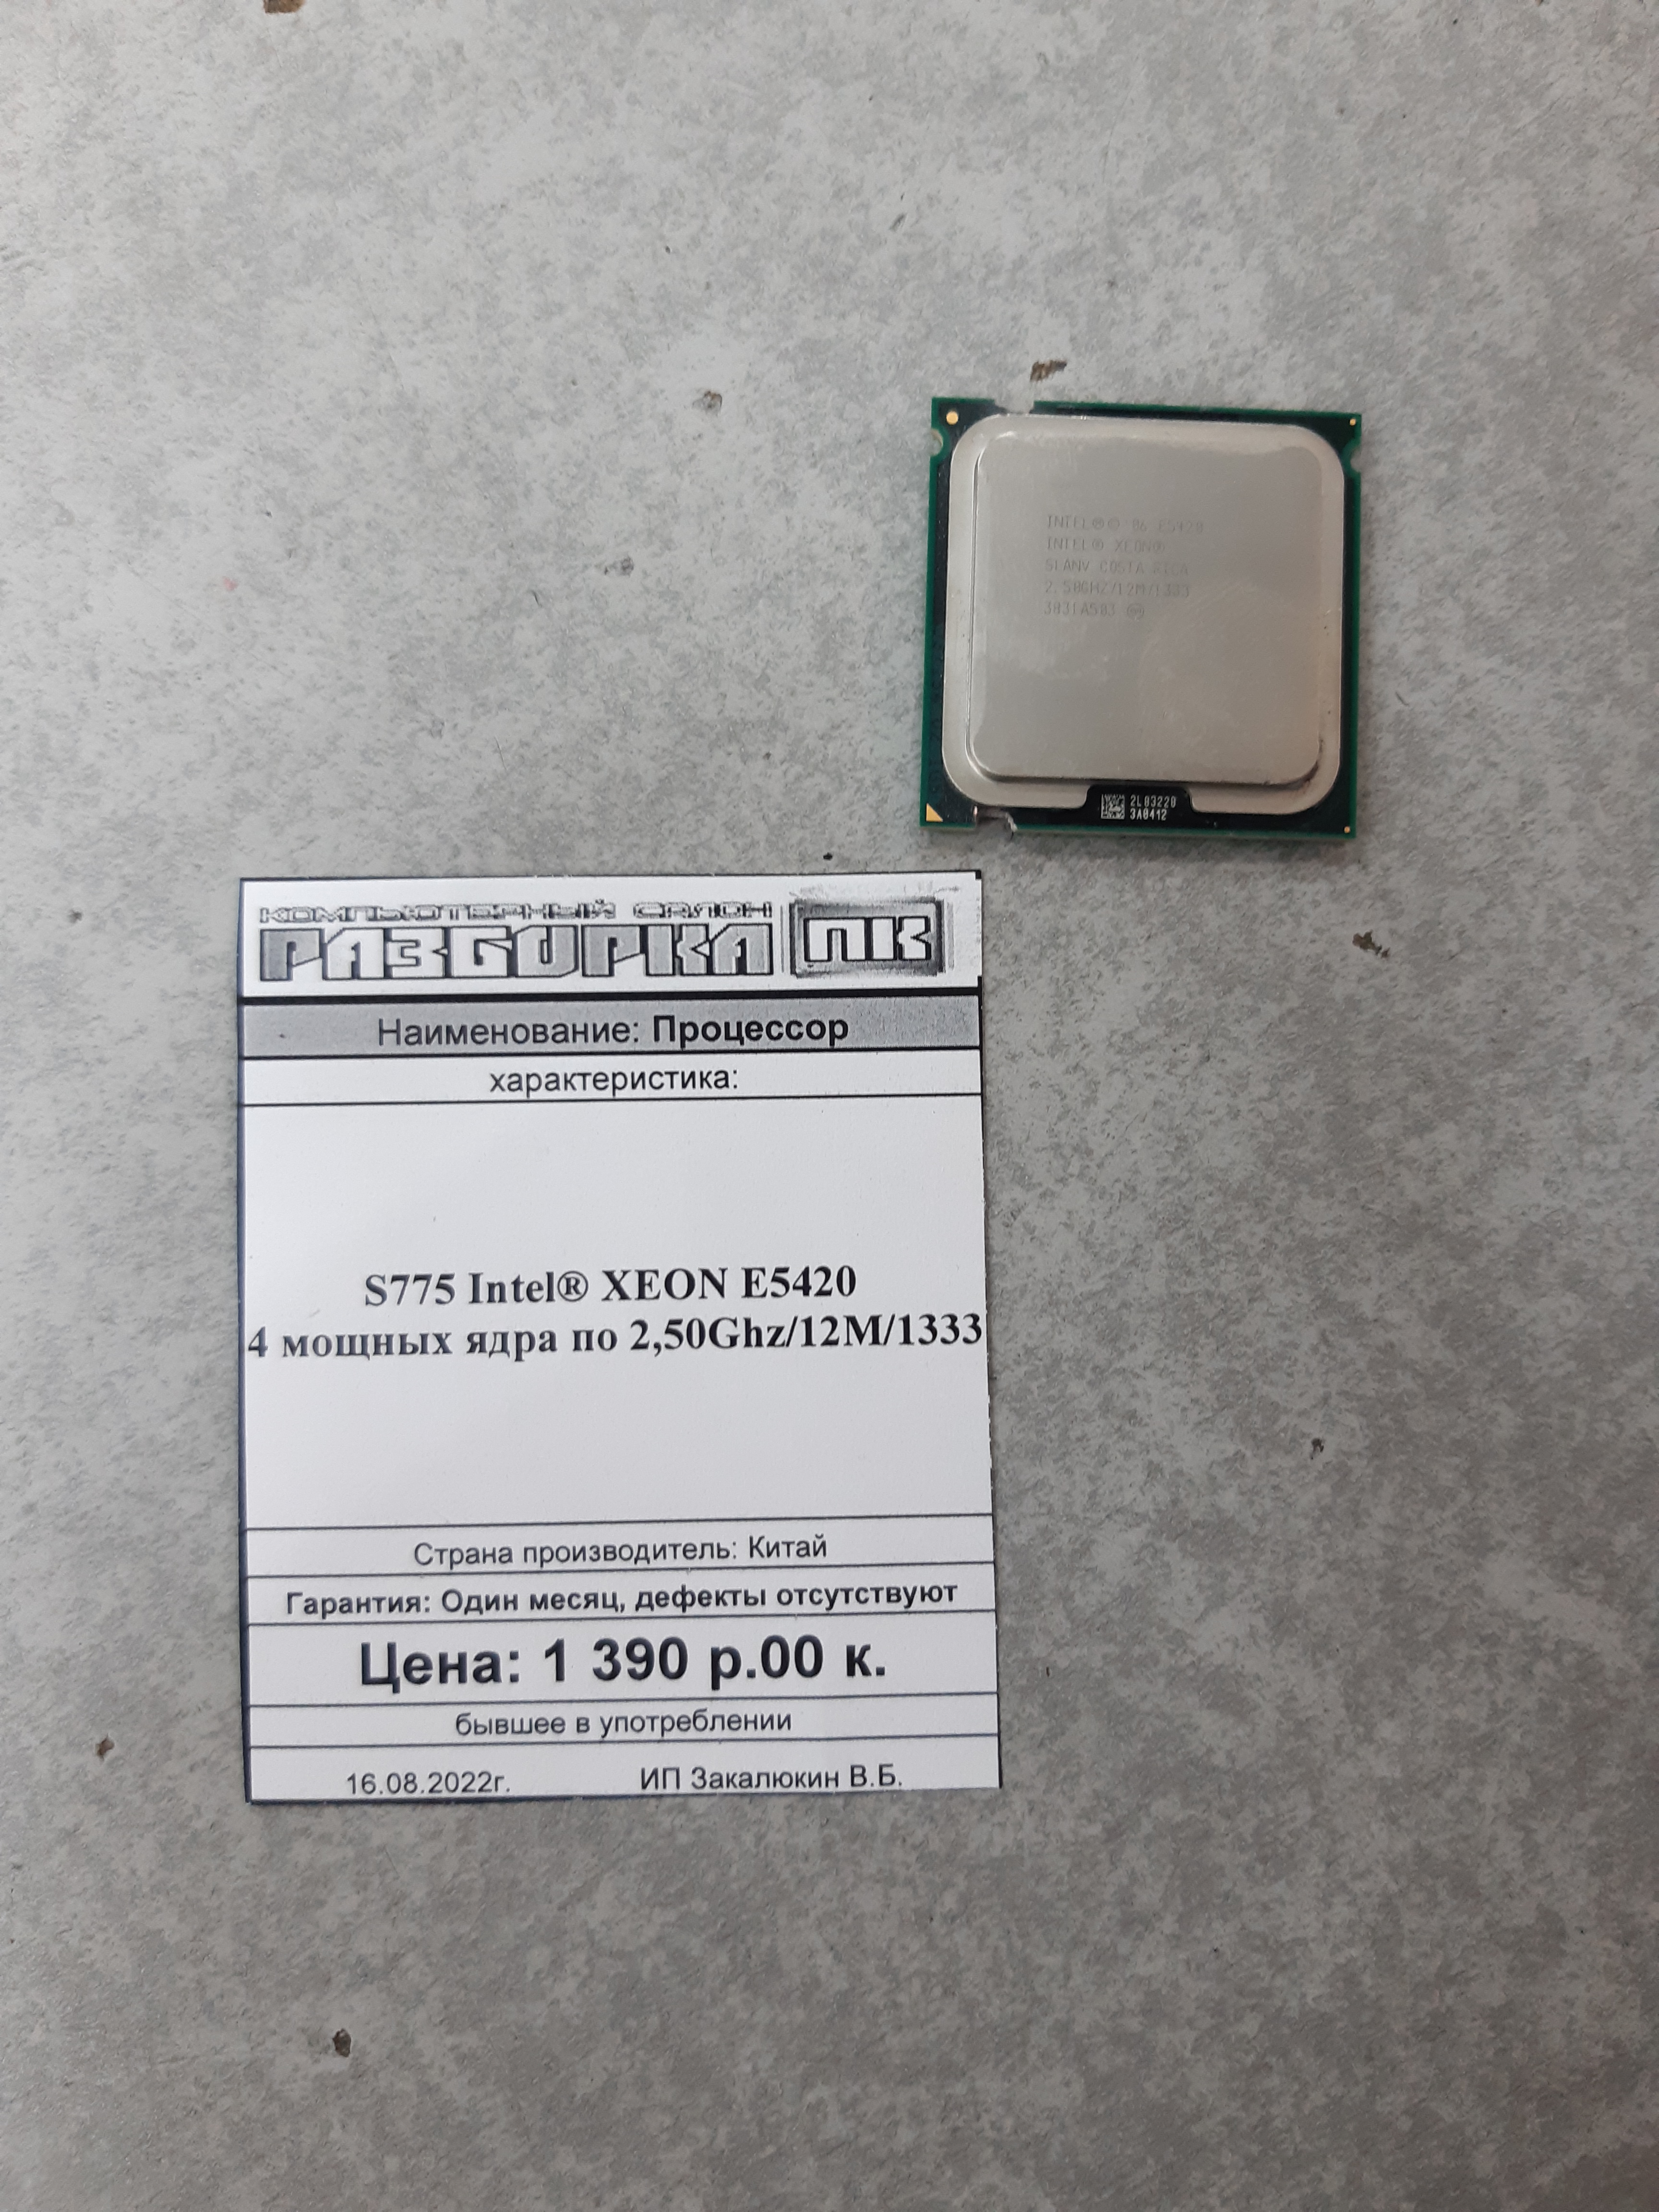 Процессор S775 Intel® XEON E5420